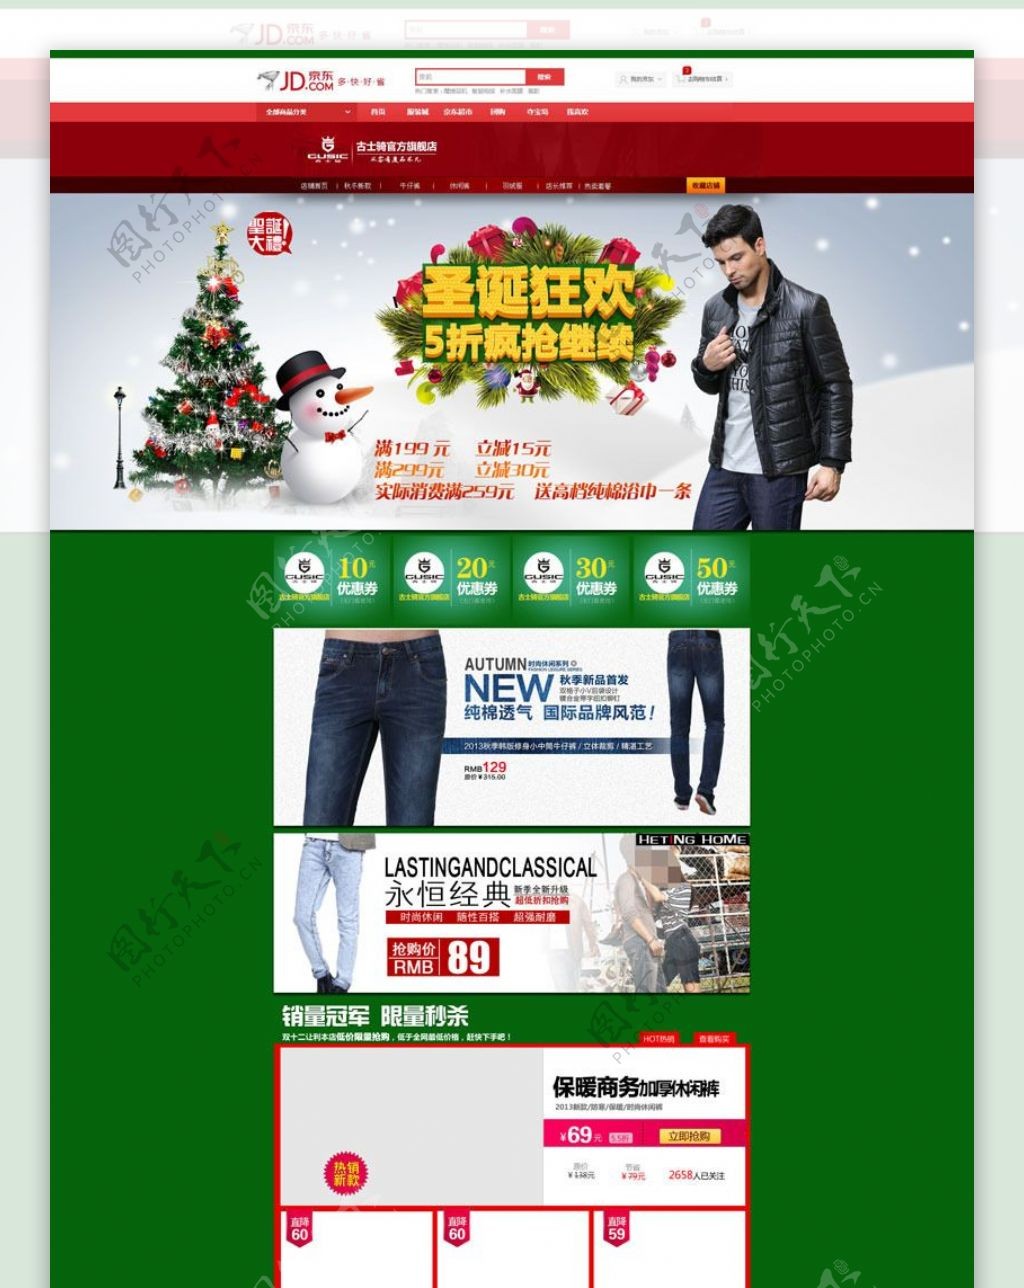 淘宝男装圣诞促销页面设计PSD素材